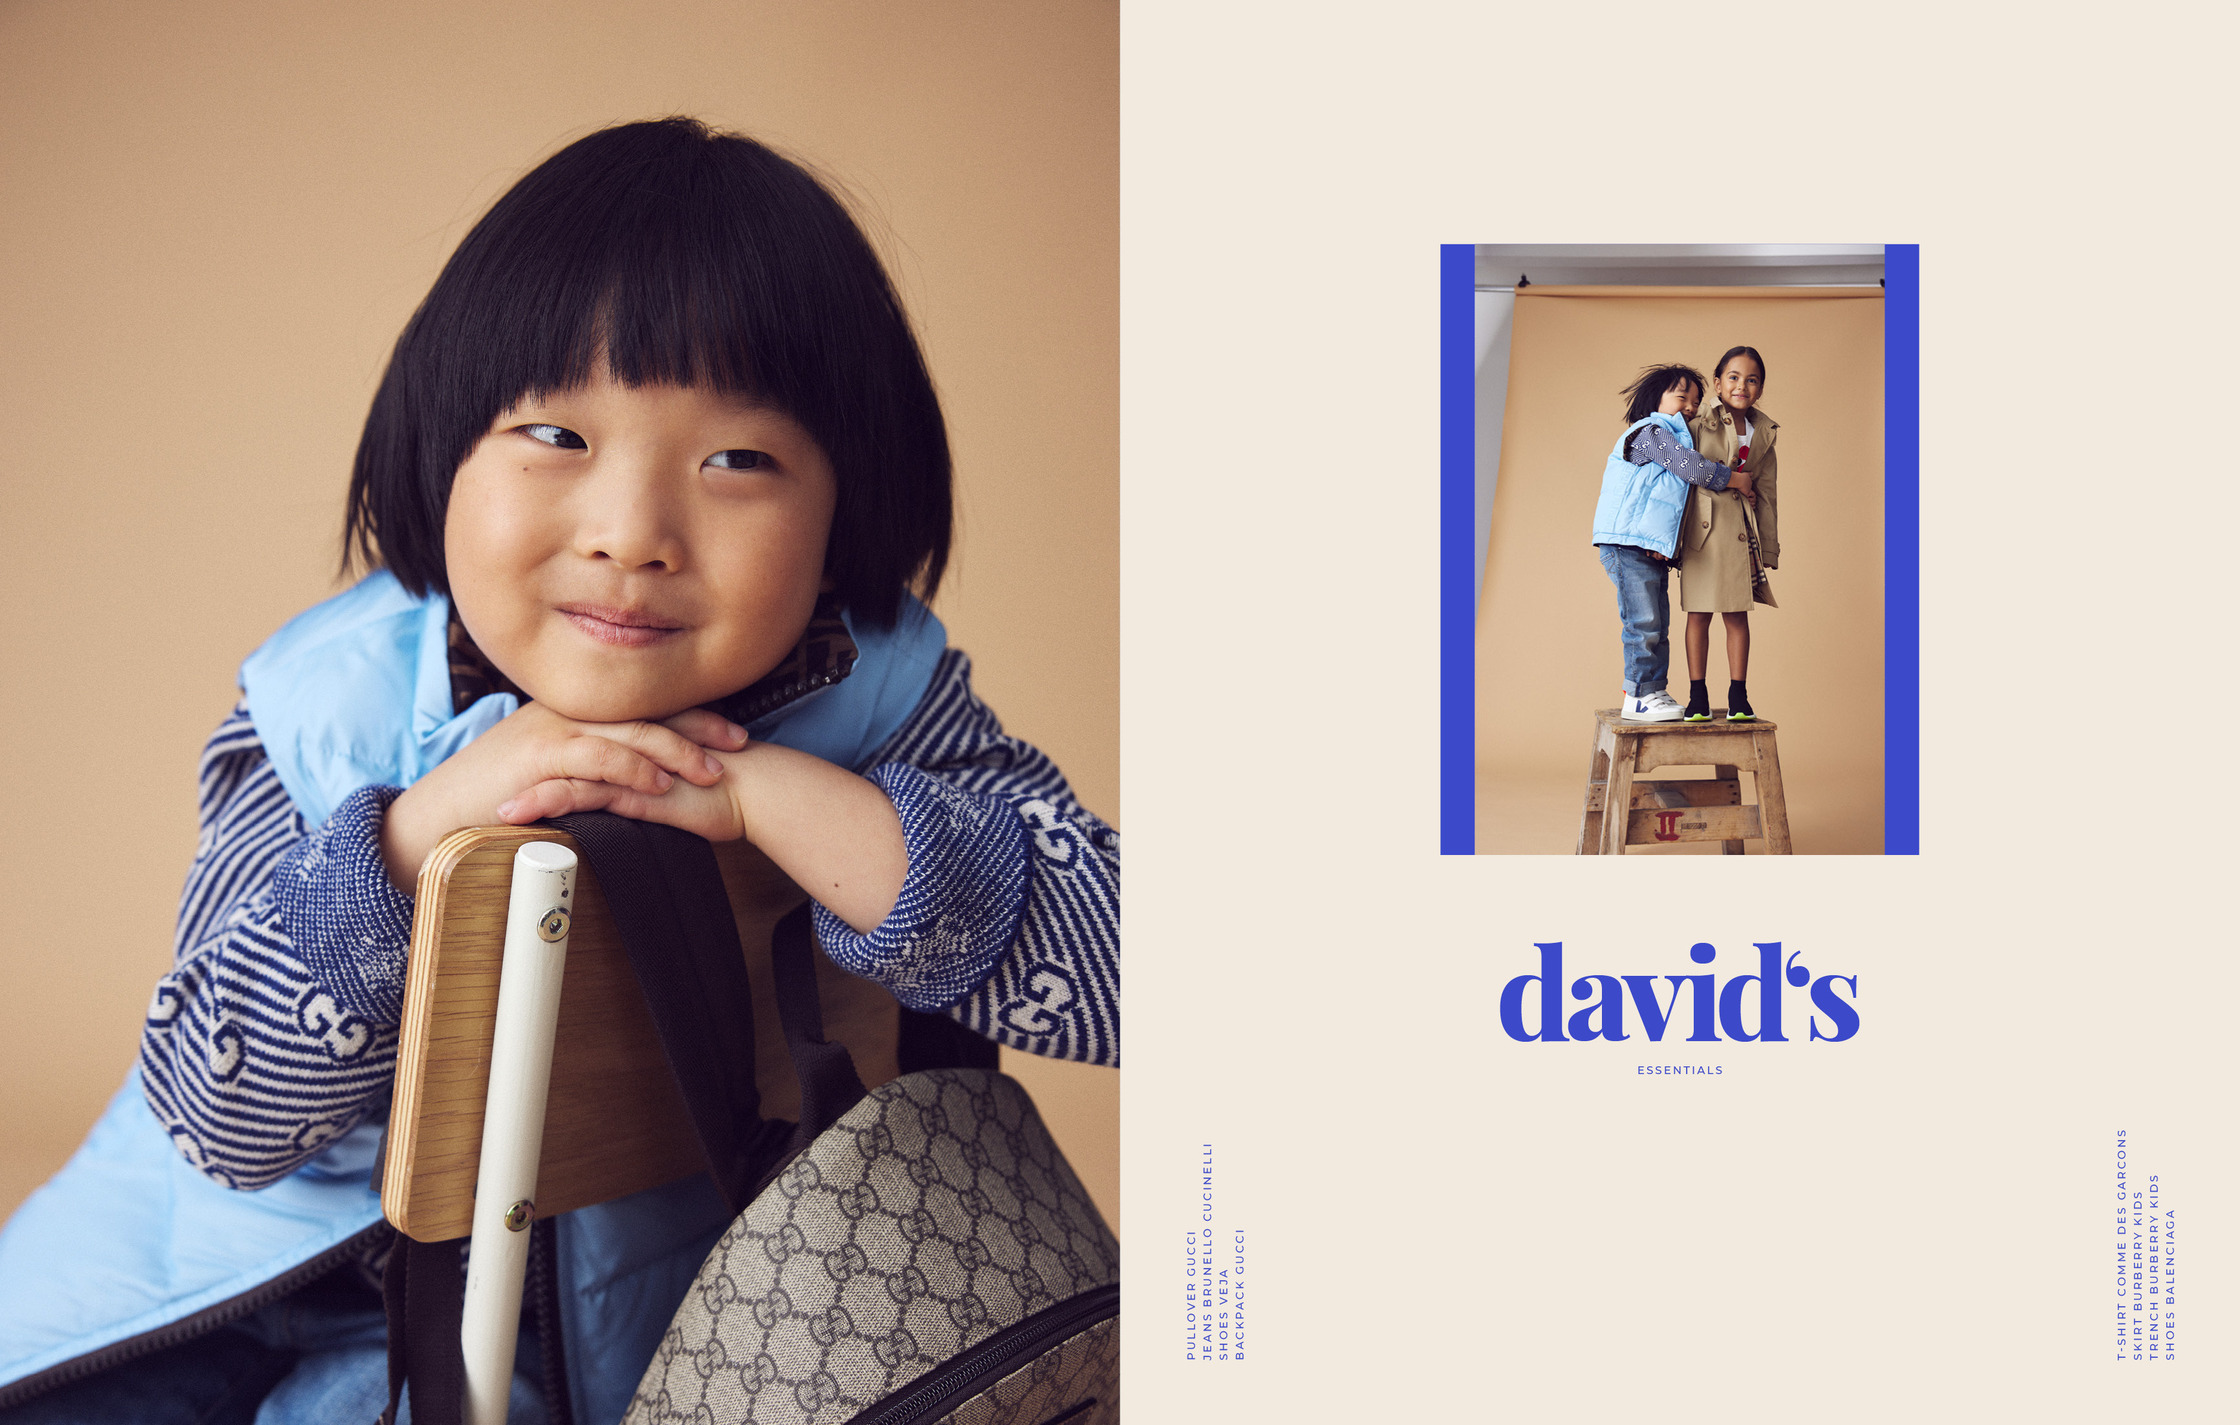 david's ad campaign - david's ad campaign - david's ad campaign -